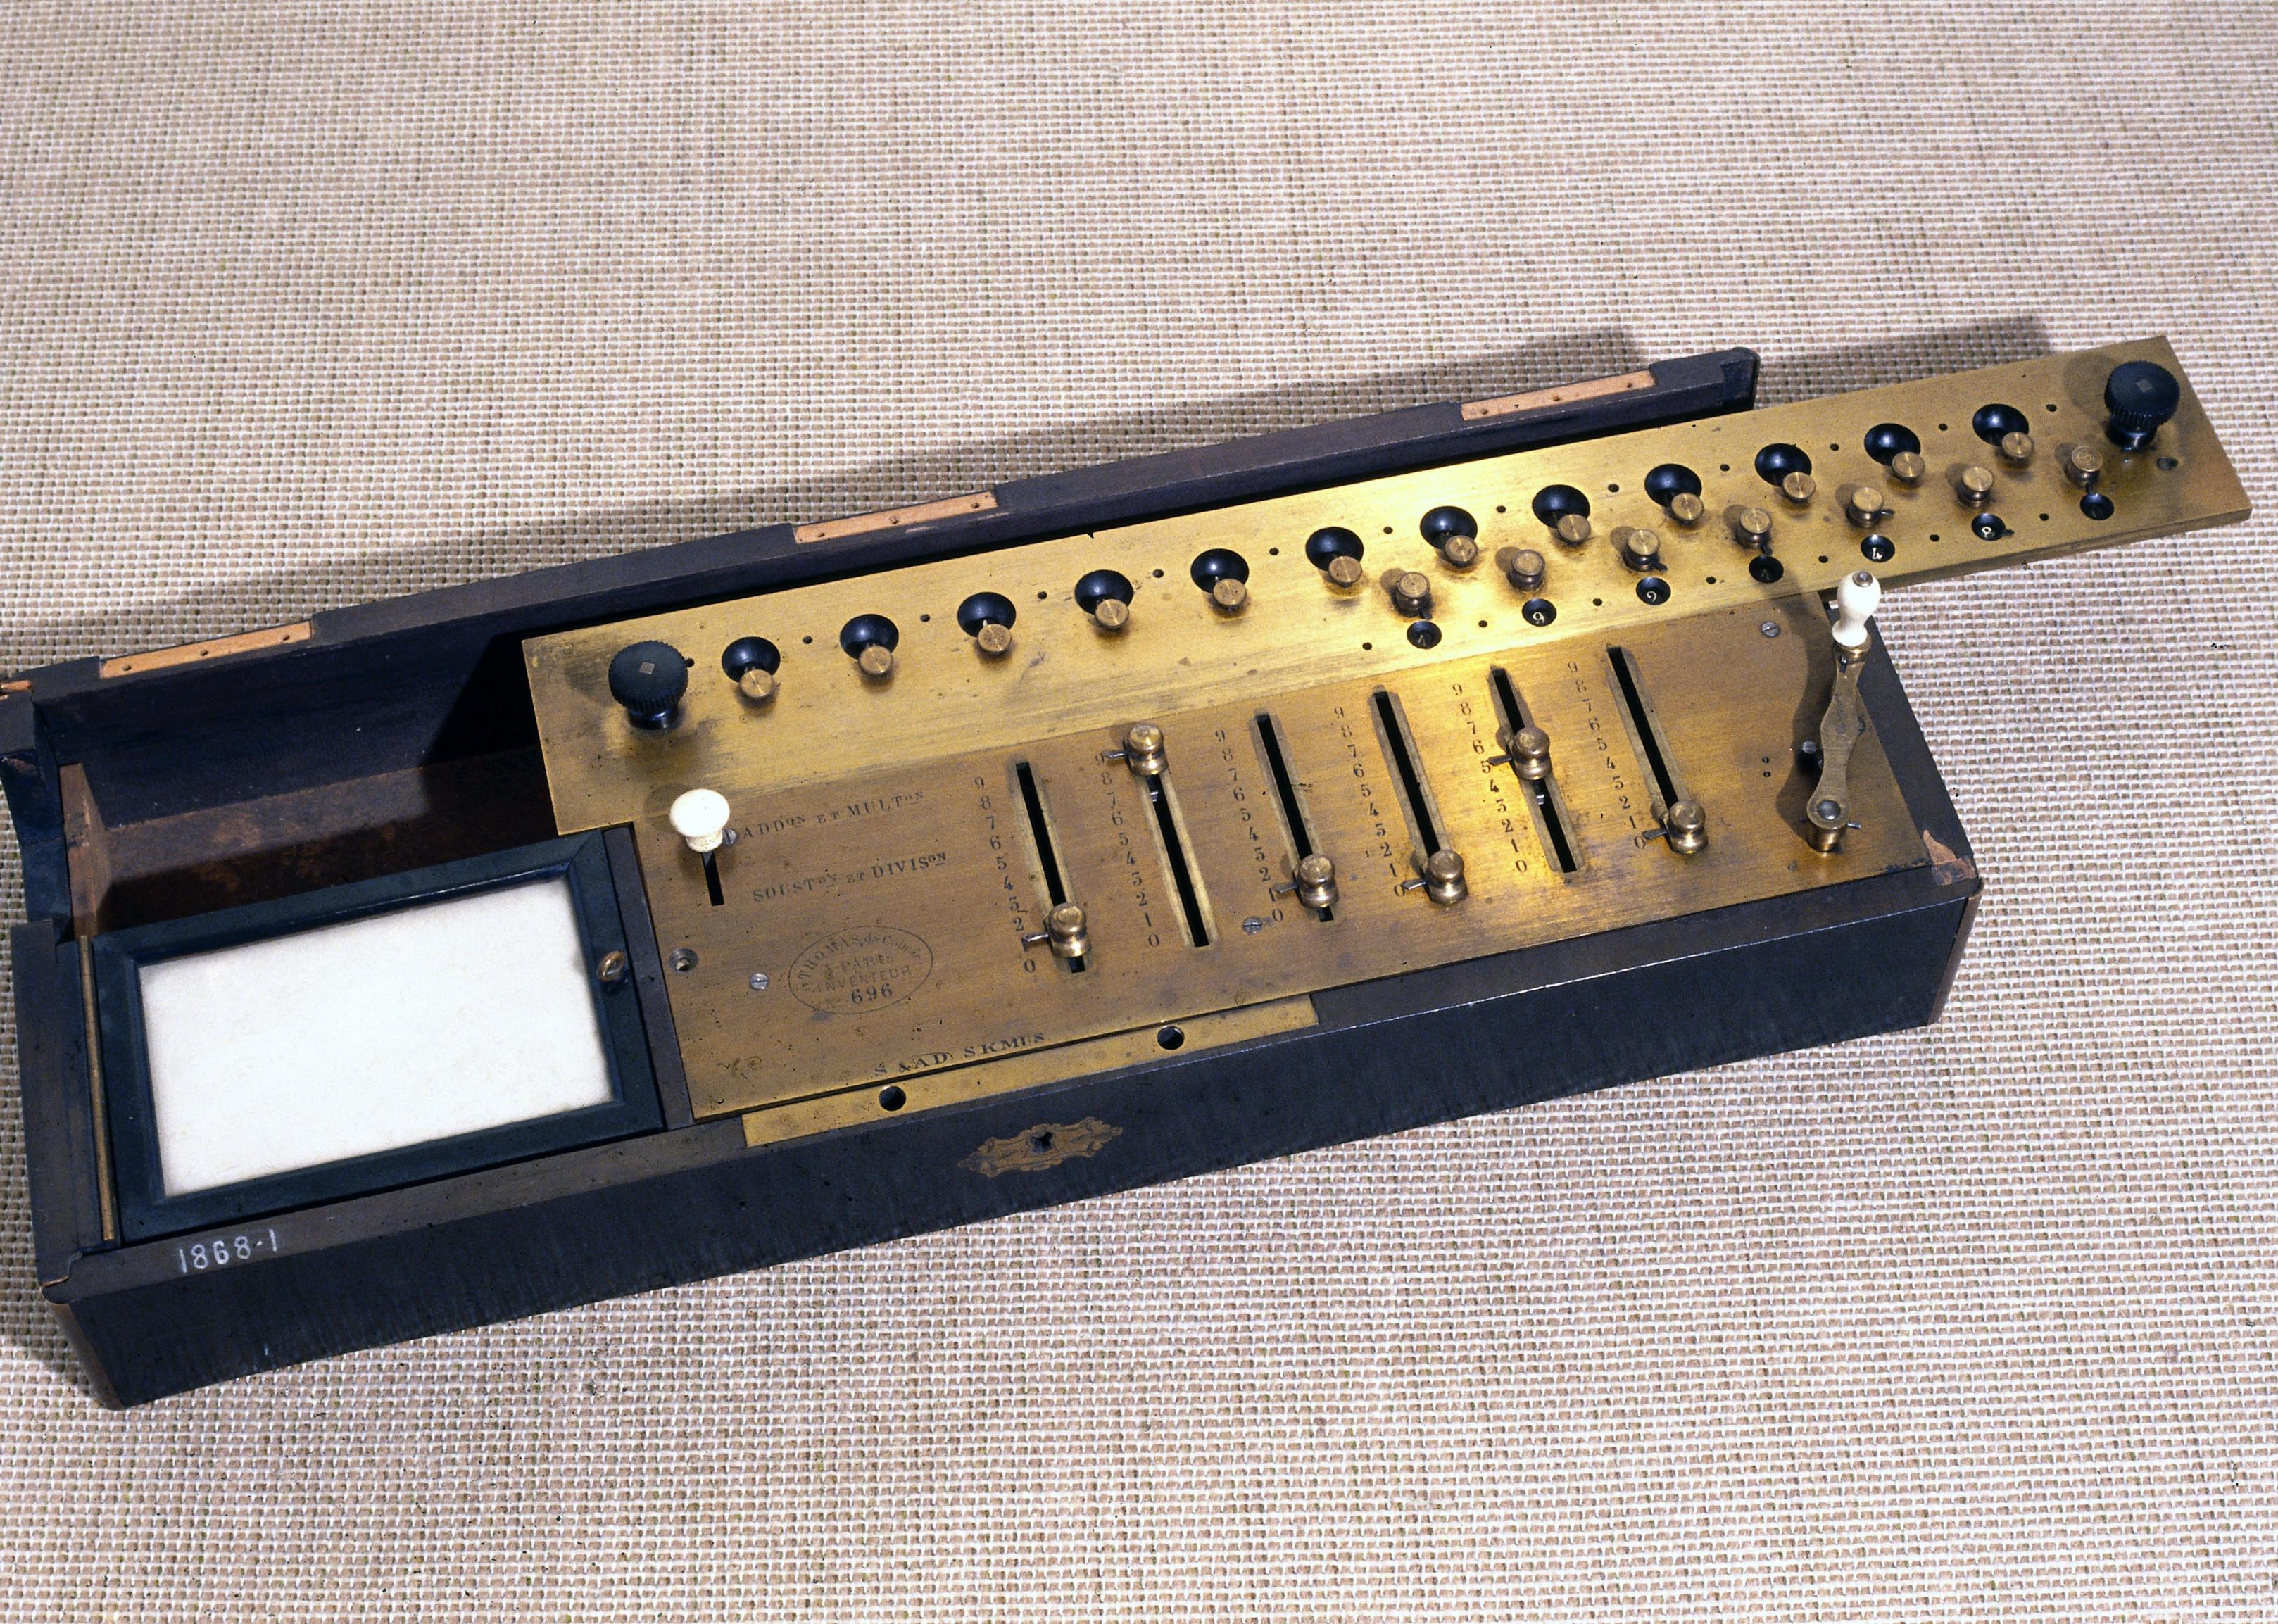 A rectangular wooden box with metal mechanisms.